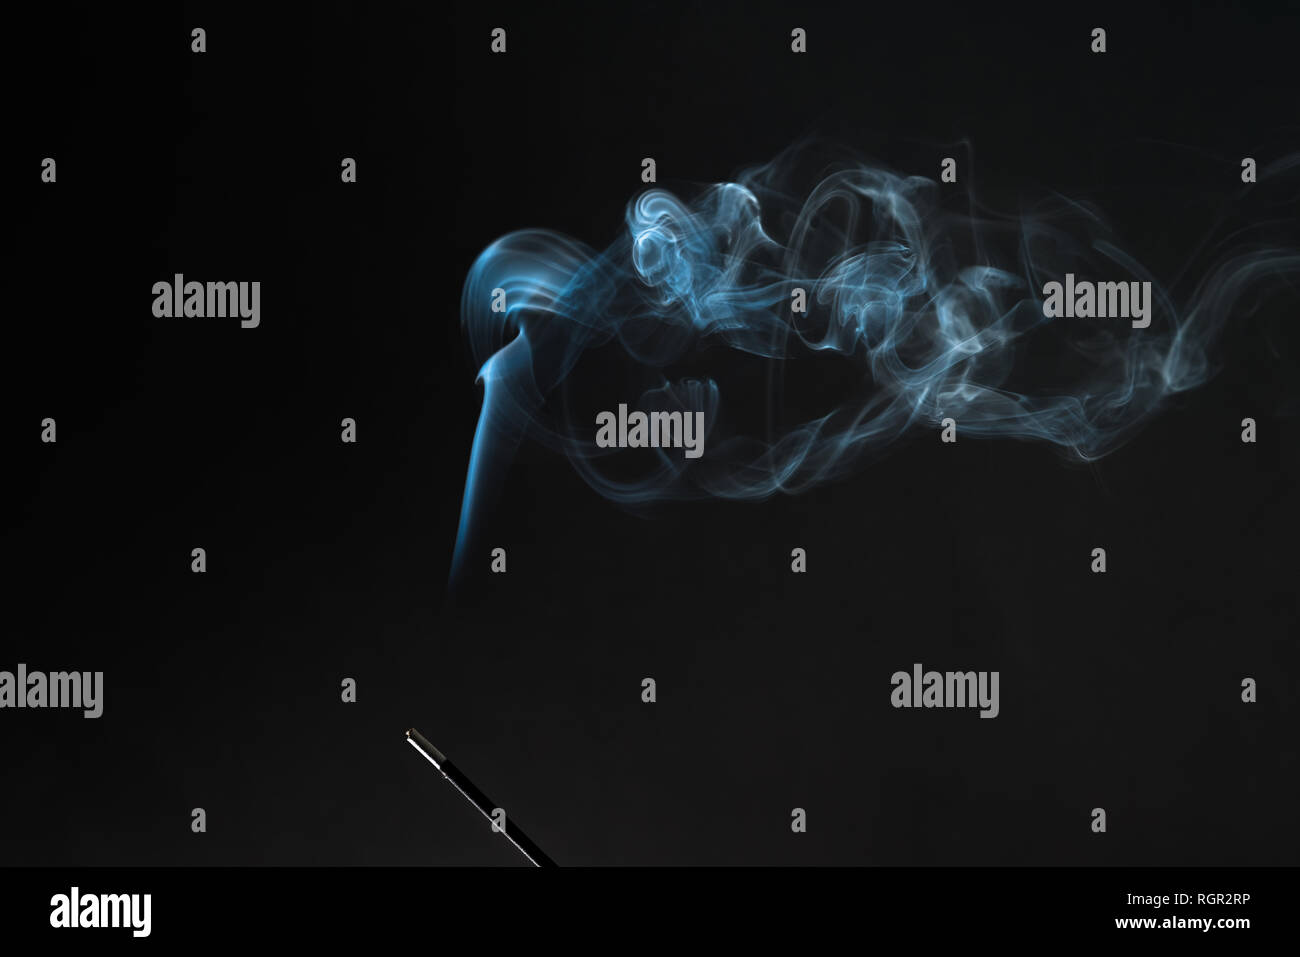 Rauchen Räucherstäbchen mit Rauch hinauf auf schwarzem Hintergrund.  Entspannung pur Thema, Rauch, Dampf, Rauch, Nebel und Dunst Wirkung  Stockfotografie - Alamy